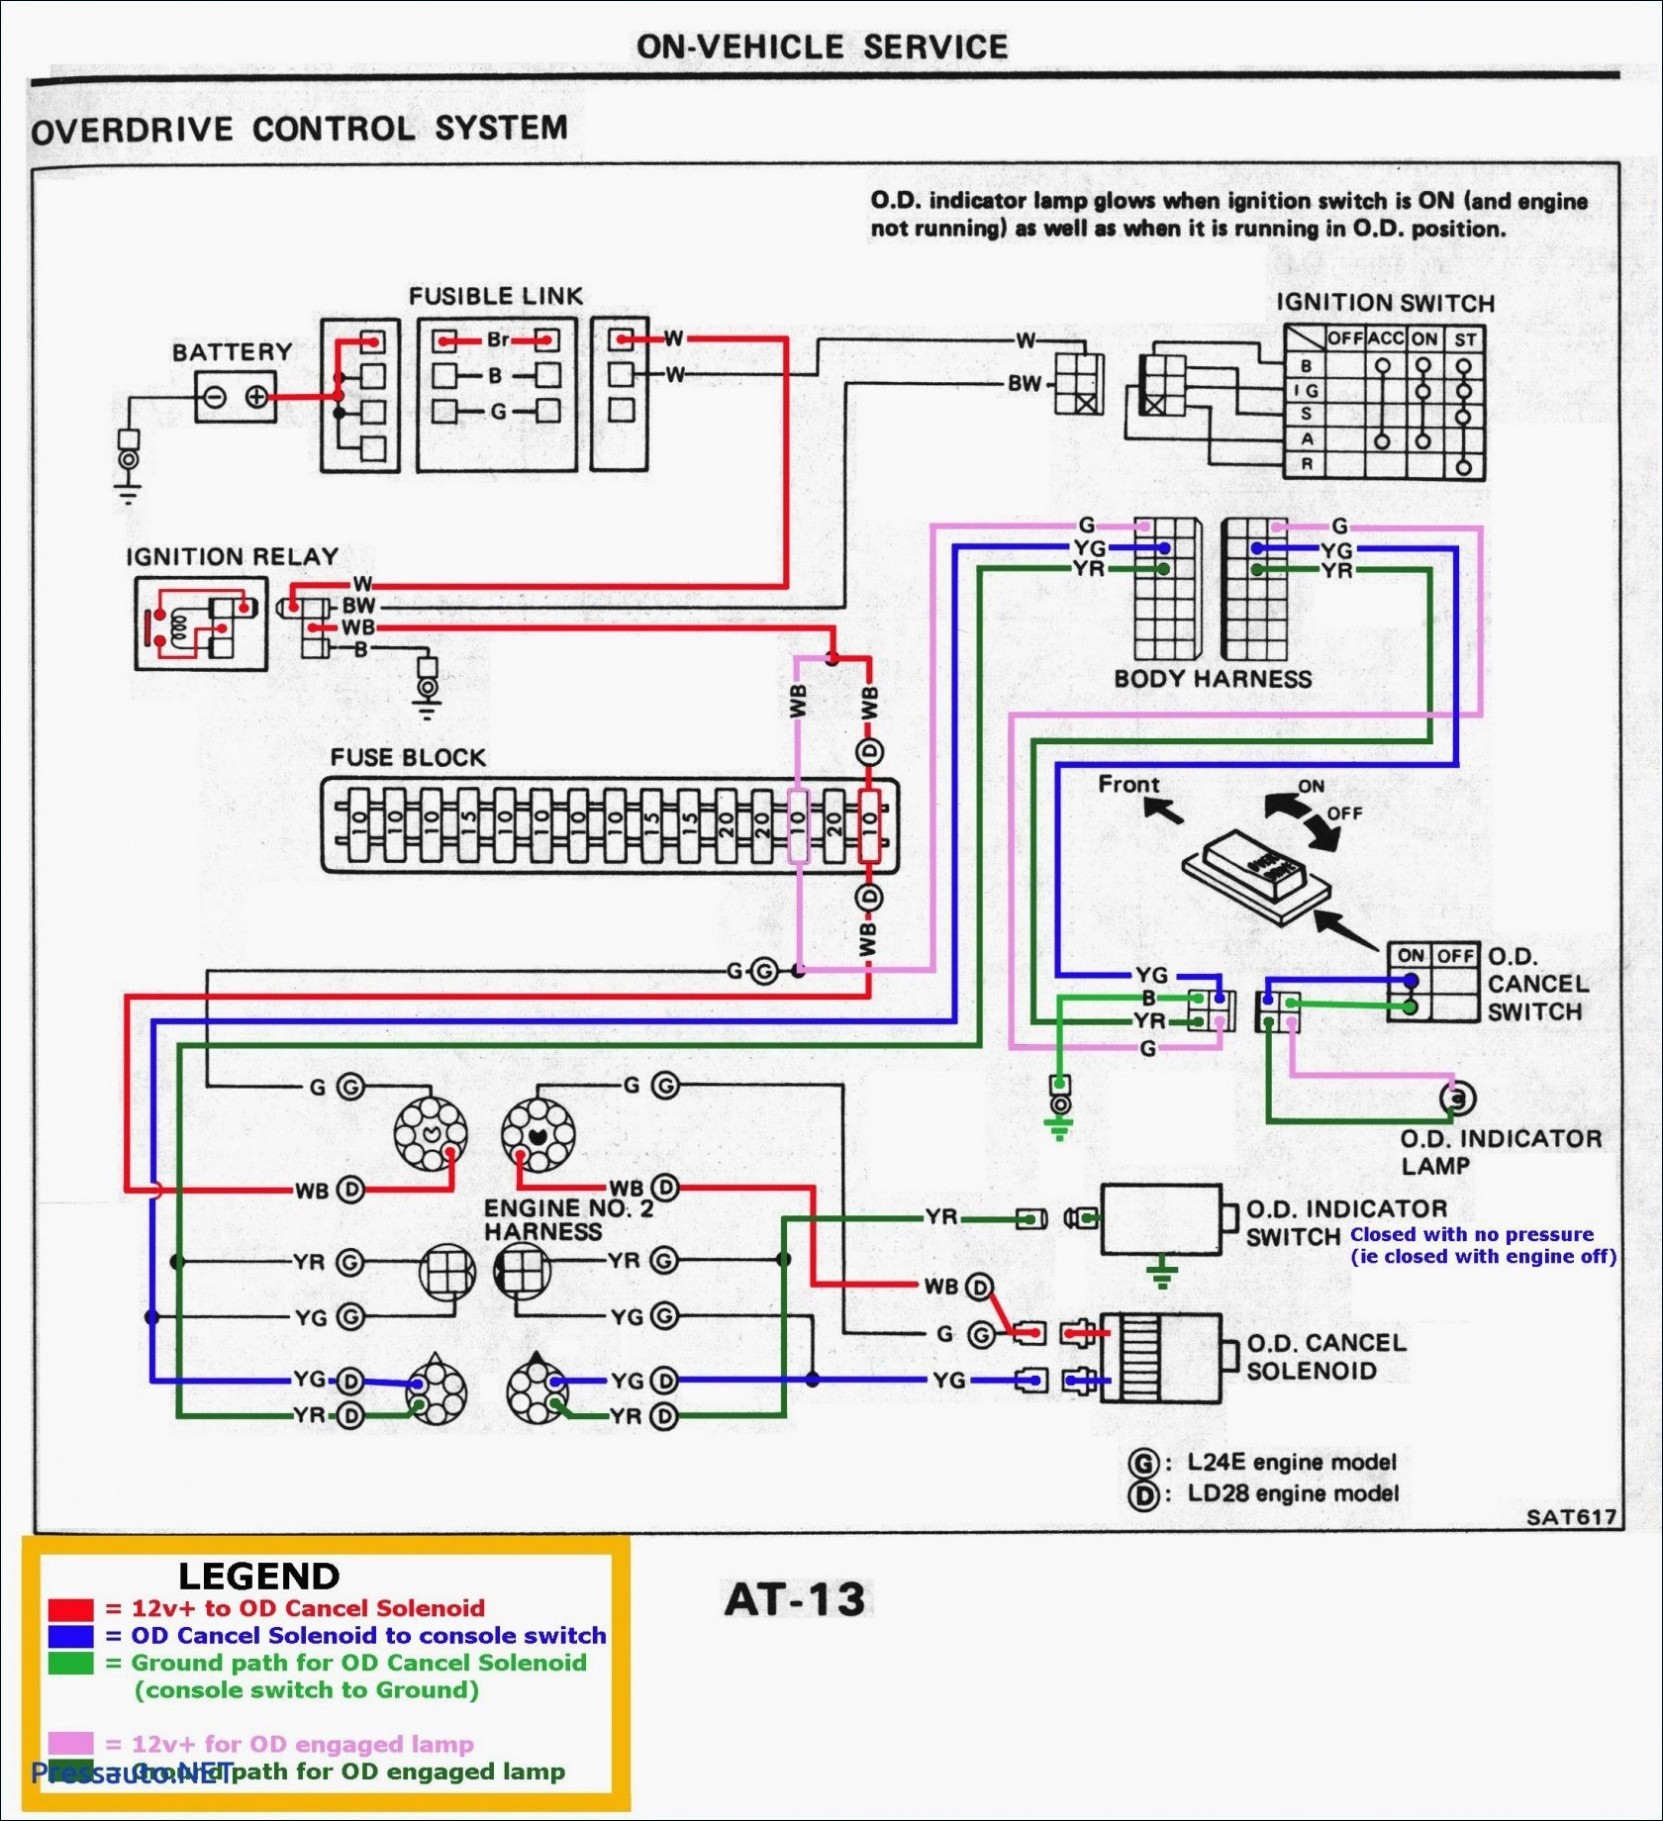 Fan Light Wiring Diagram Australia Best Wiring Diagram Light Switch – Third Brake Light Wiring Diagram